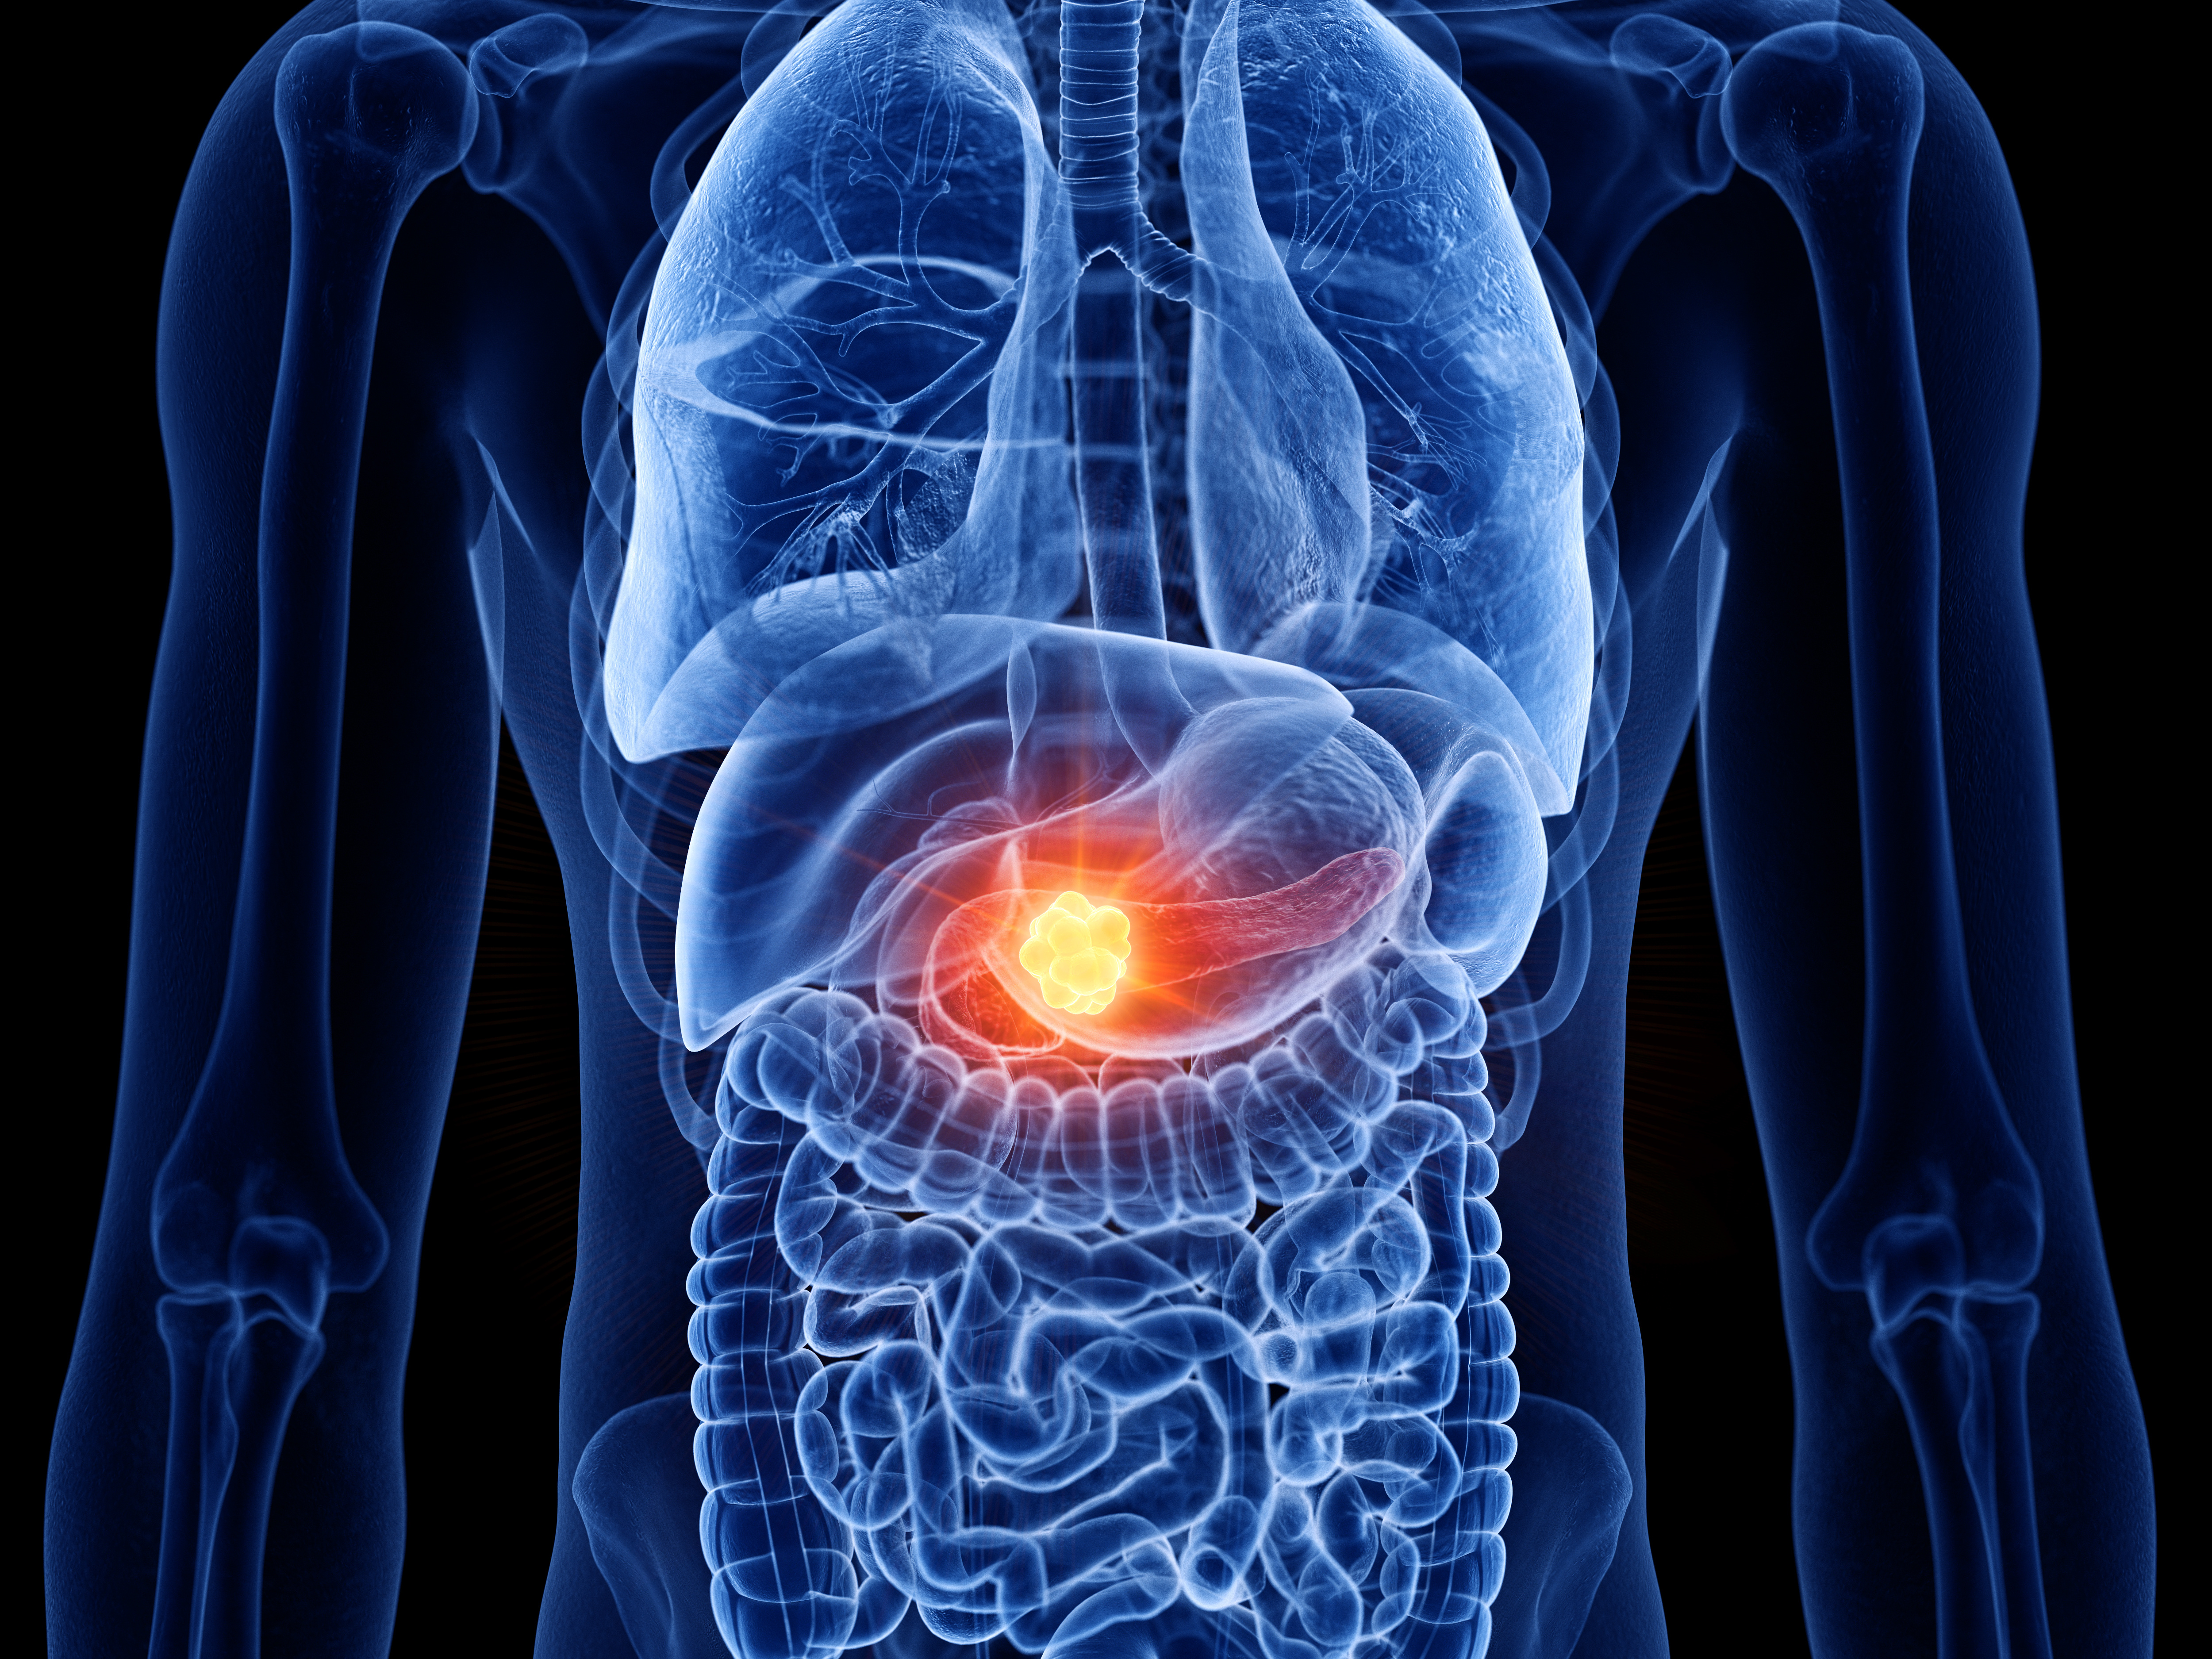 早期発見されにくい！膵がん診断の難しさ、注意すべき症状について